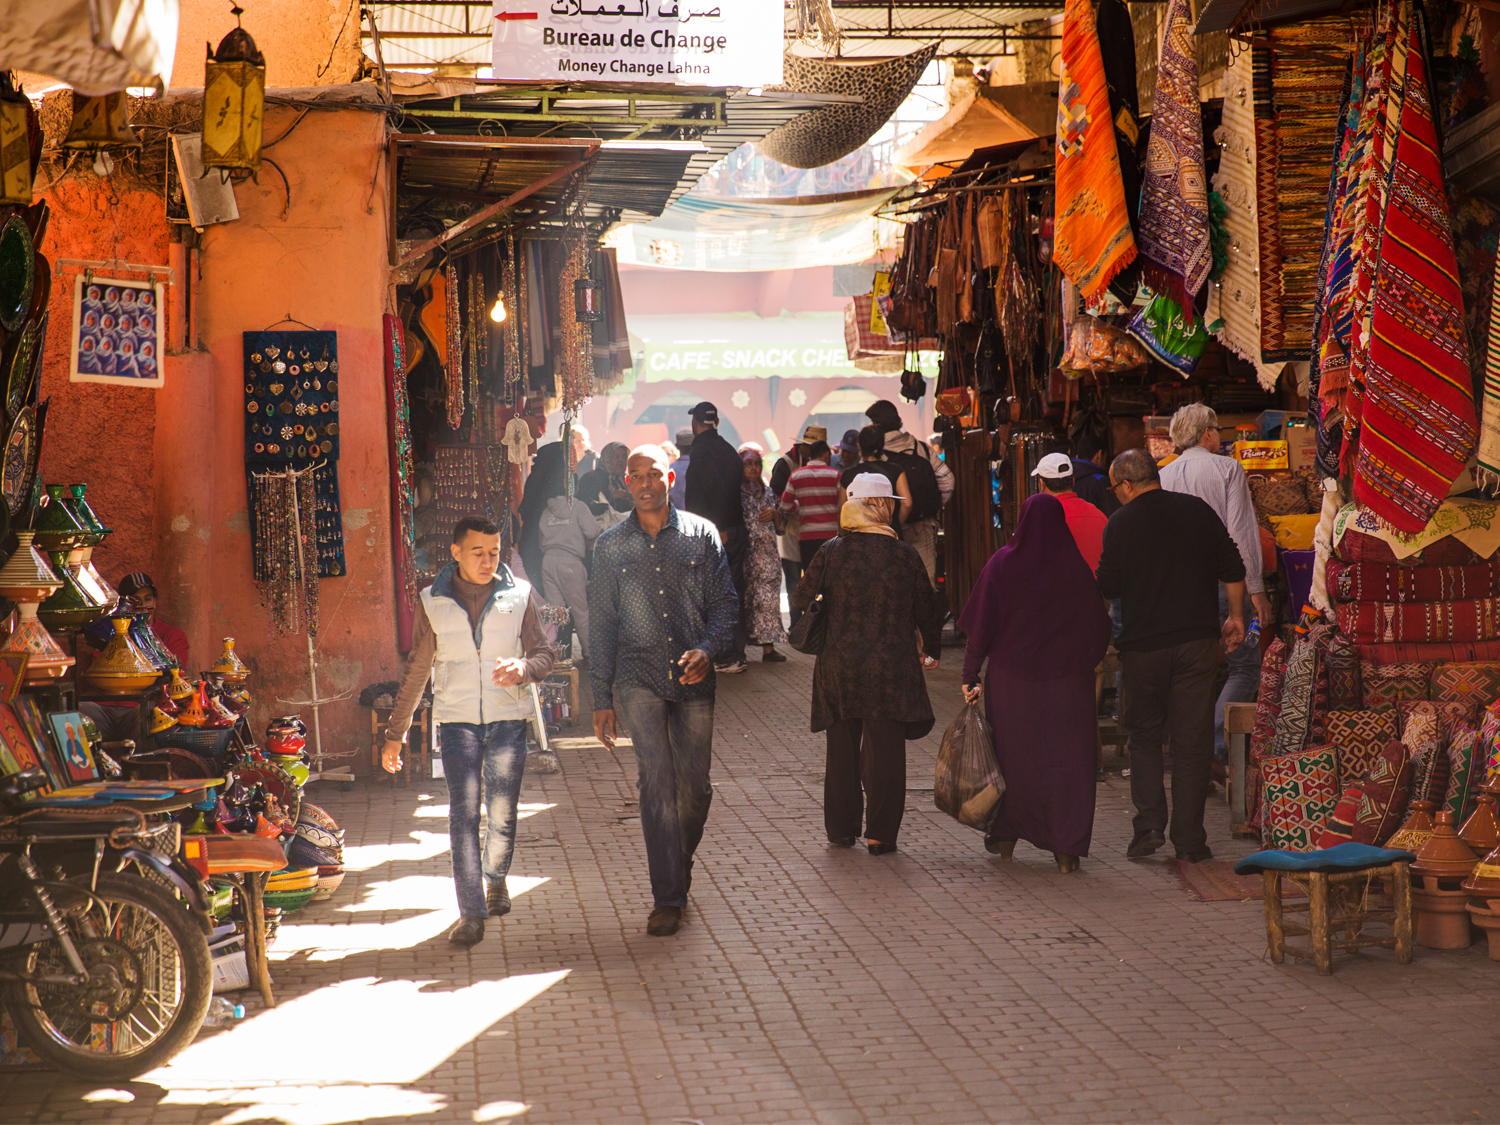 Two men walk through a souk in Marrakech, Morocco